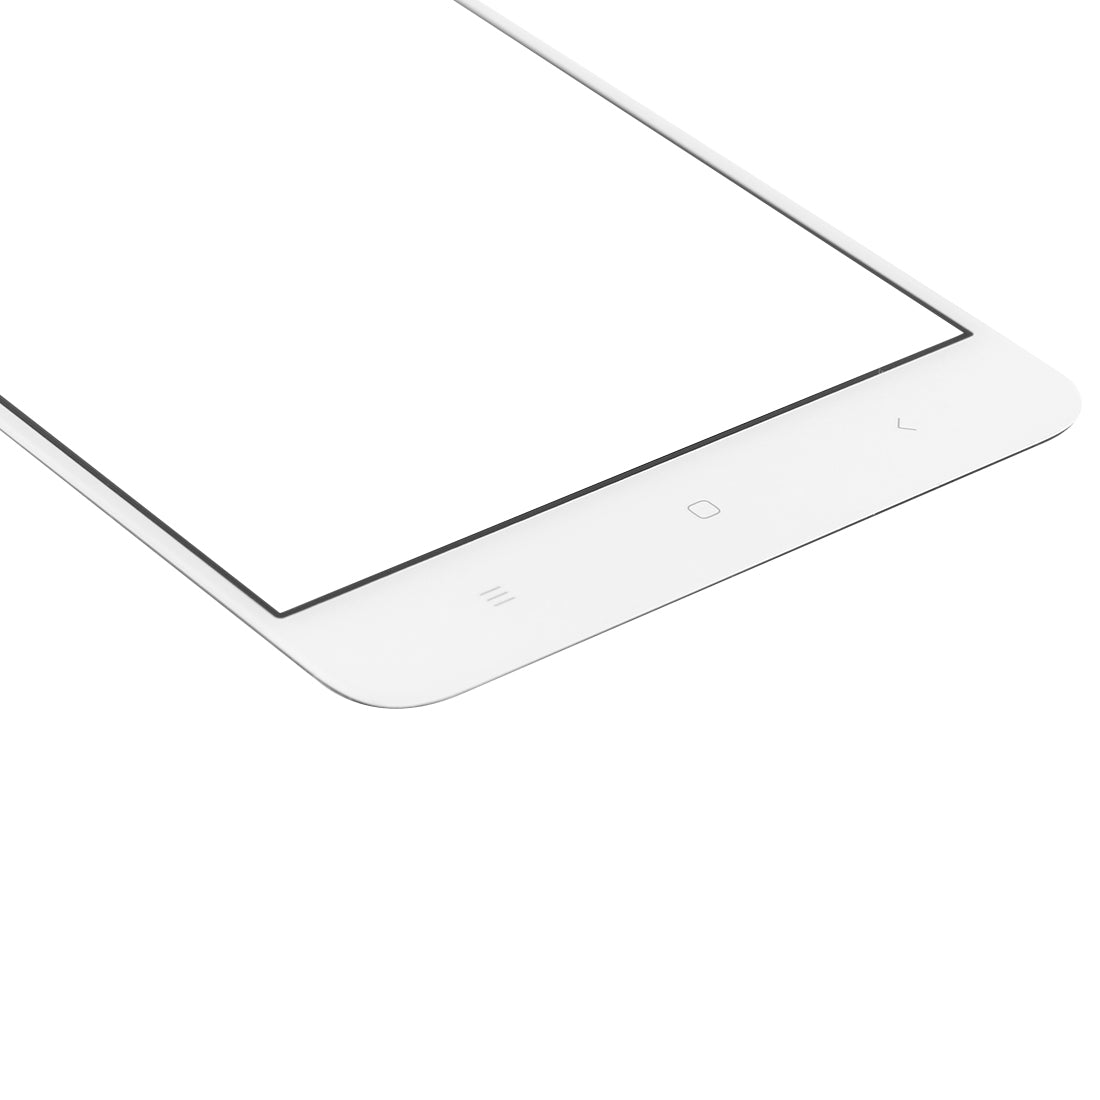 Pantalla Tactil Digitalizador Xiaomi Redmi Note 3 Blanco